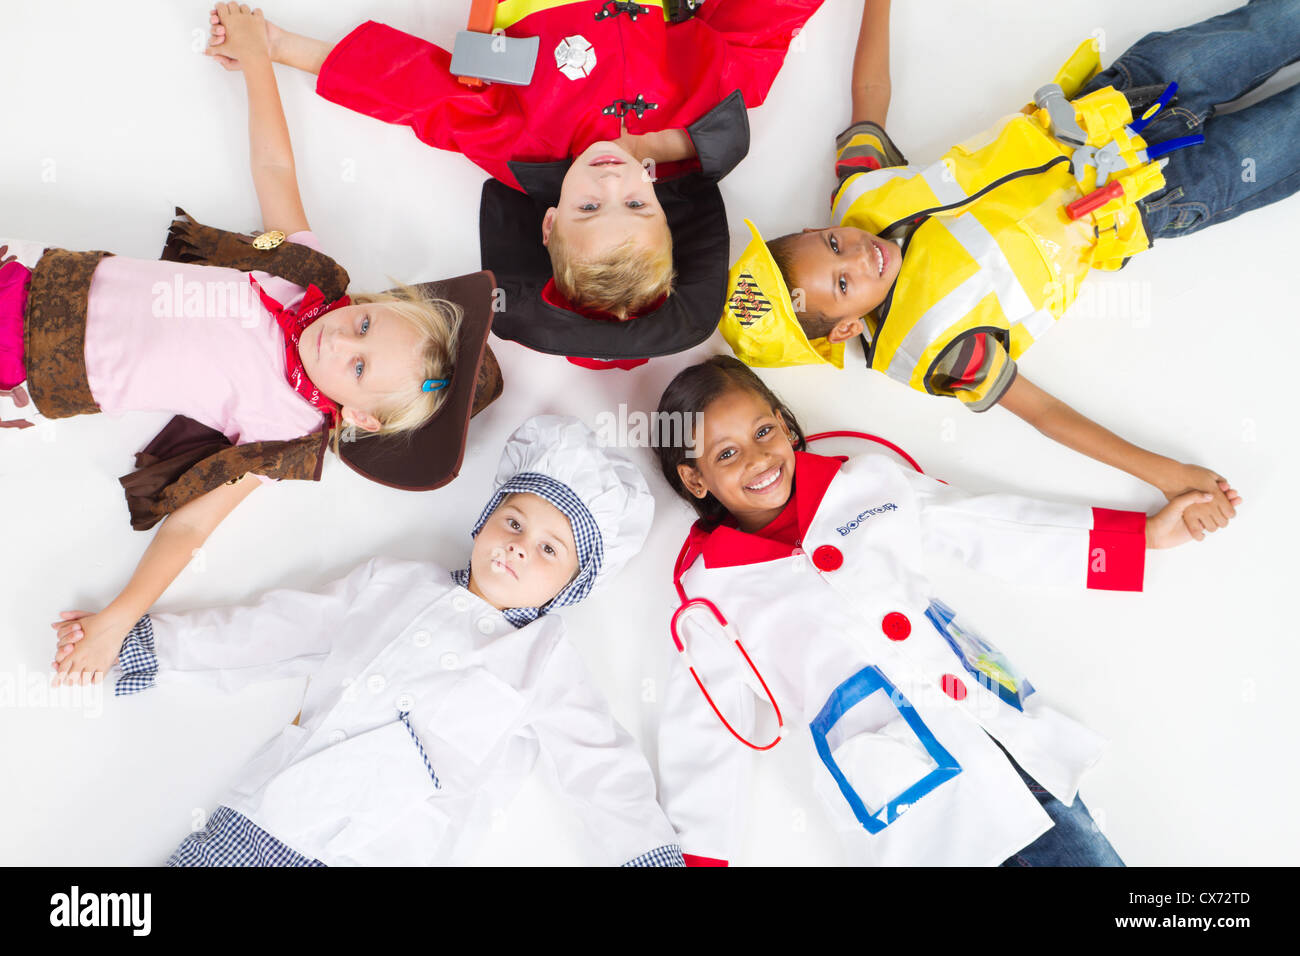 Gruppe von Kindern in verschiedenen Uniformen am Boden liegend Stockfoto